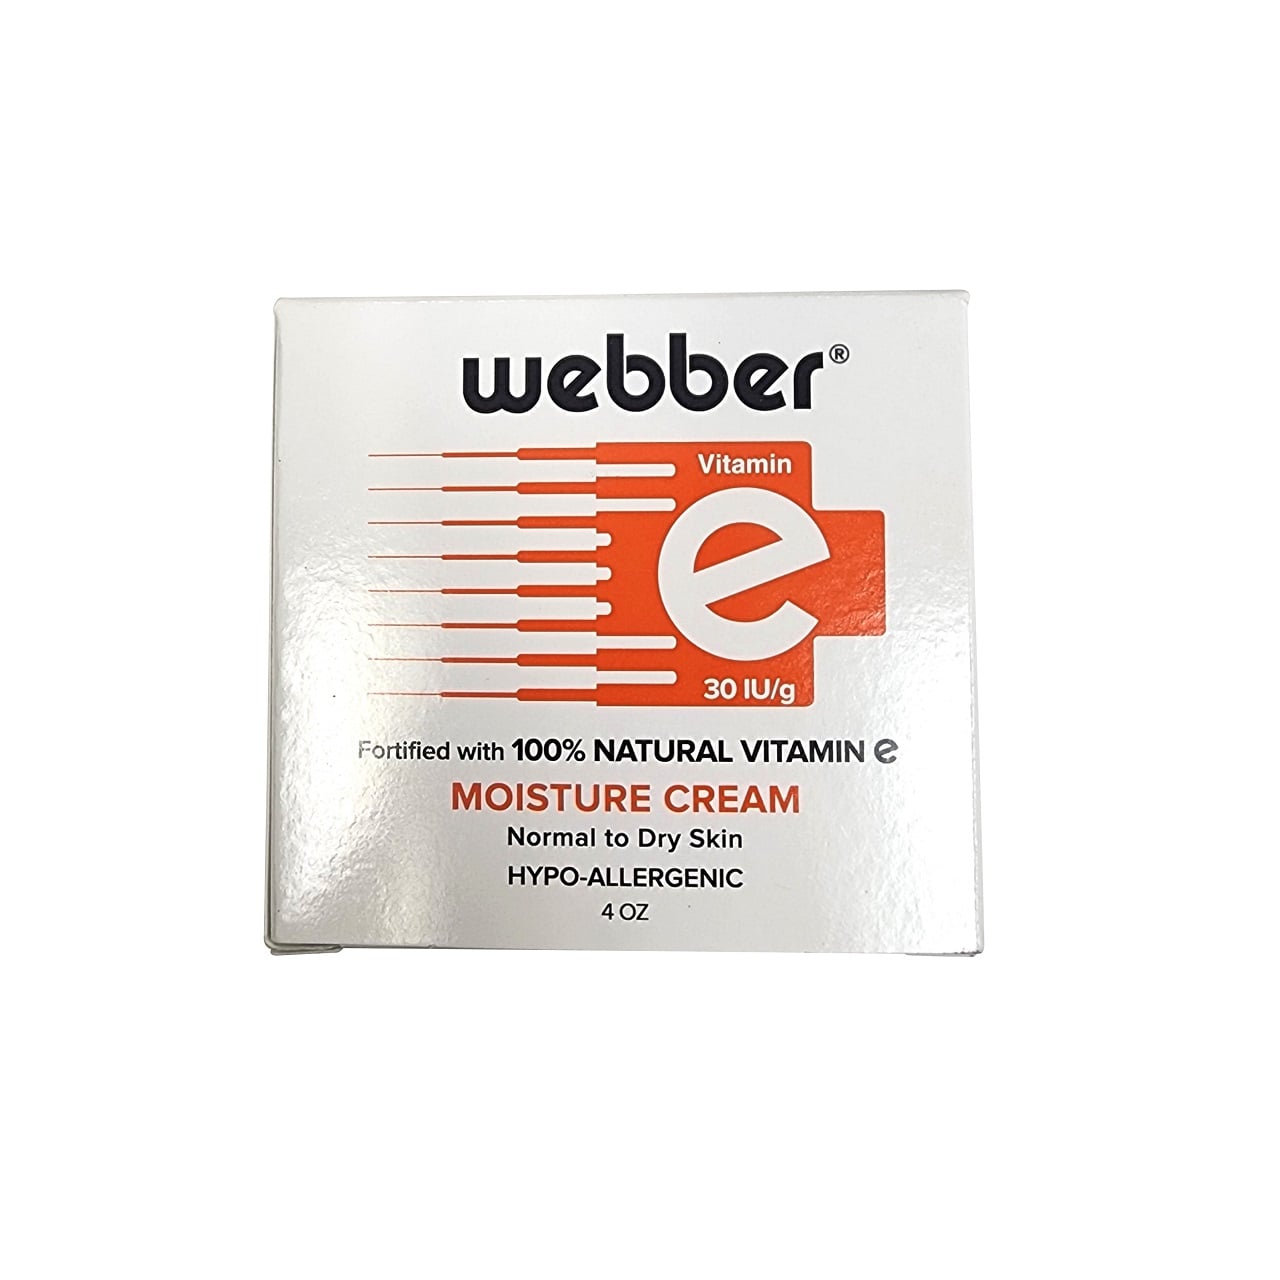 Product label for Webber Vitamin E Moisture Cream (120 mL) in English